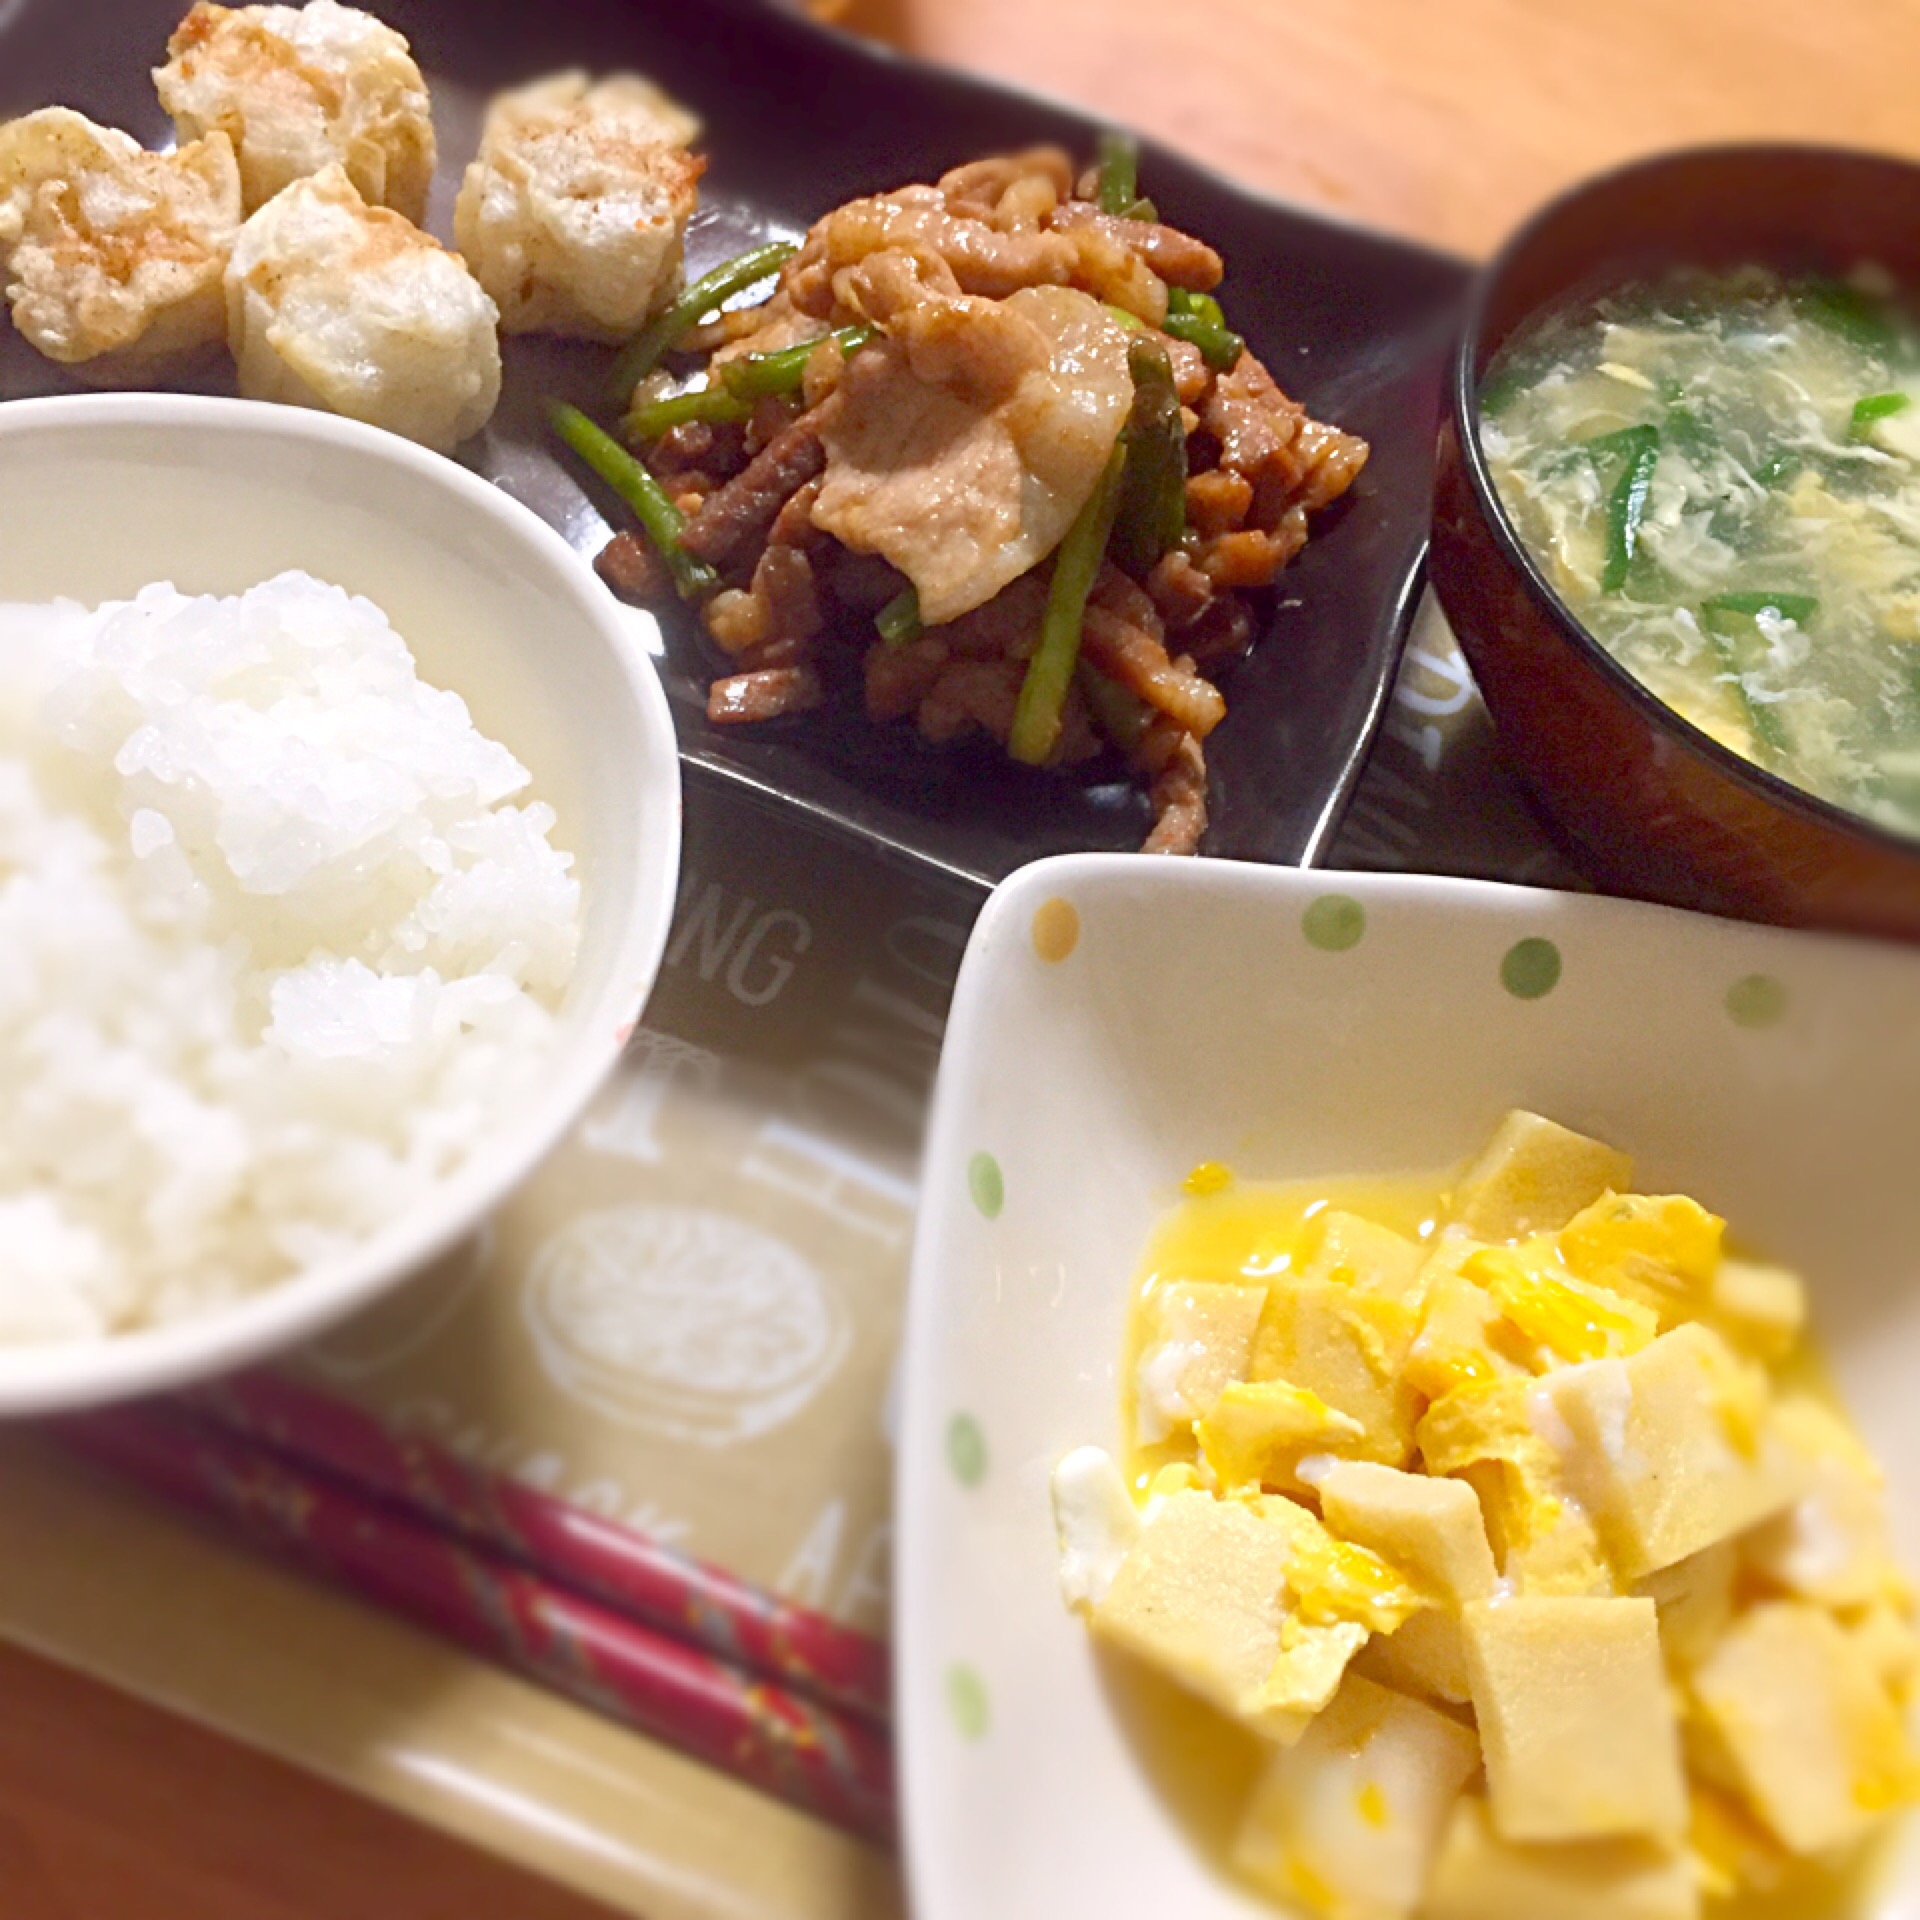 ✱焼肉
✱揚げ焼売
✱高野豆腐の卵とじ
✱ニラ玉スープ